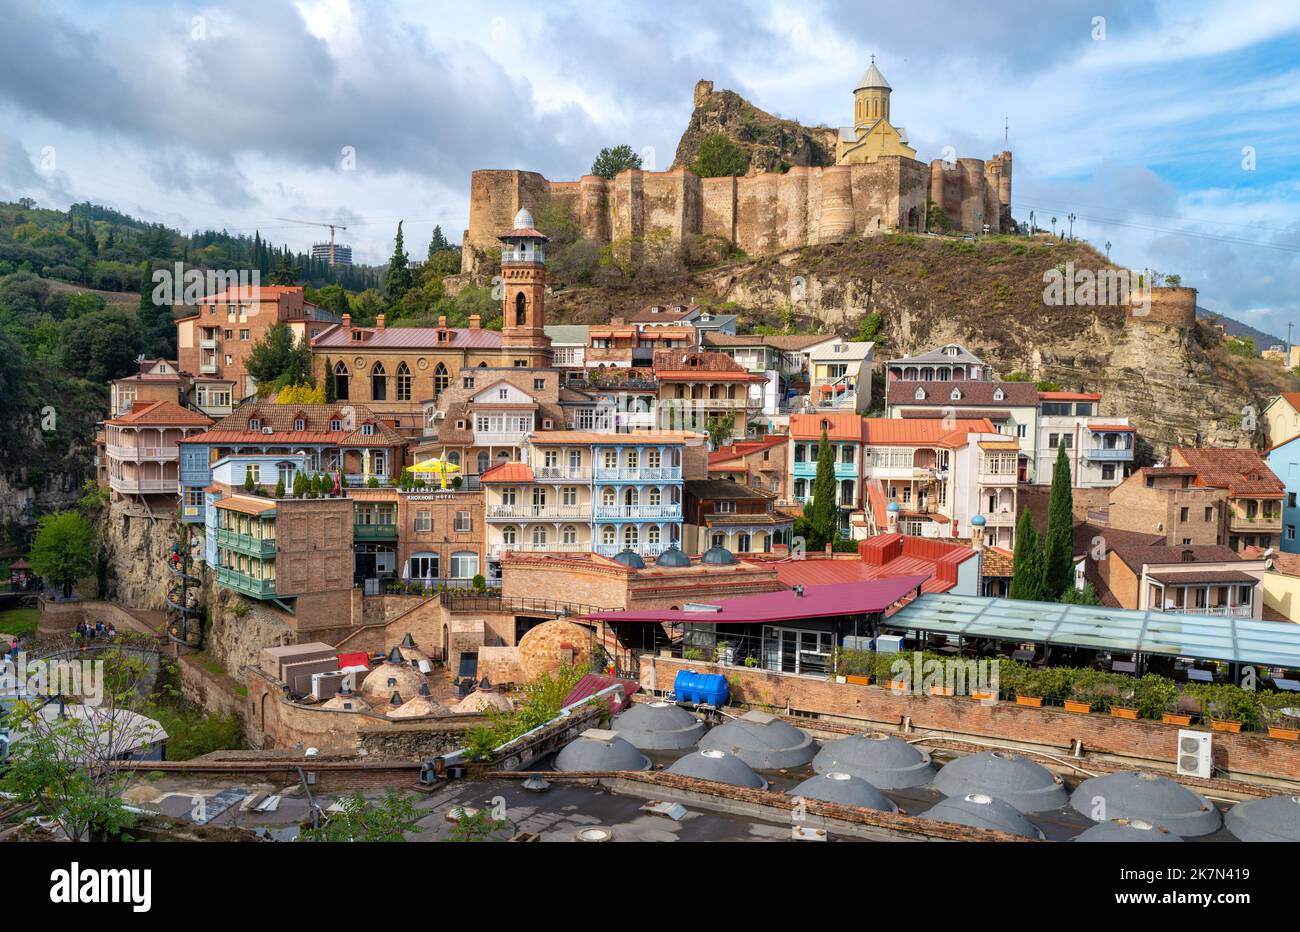 Vue de la vieille ville de Tbilissi, capitale de la Géorgie, capturée en octobre 2022 Banque D'Images